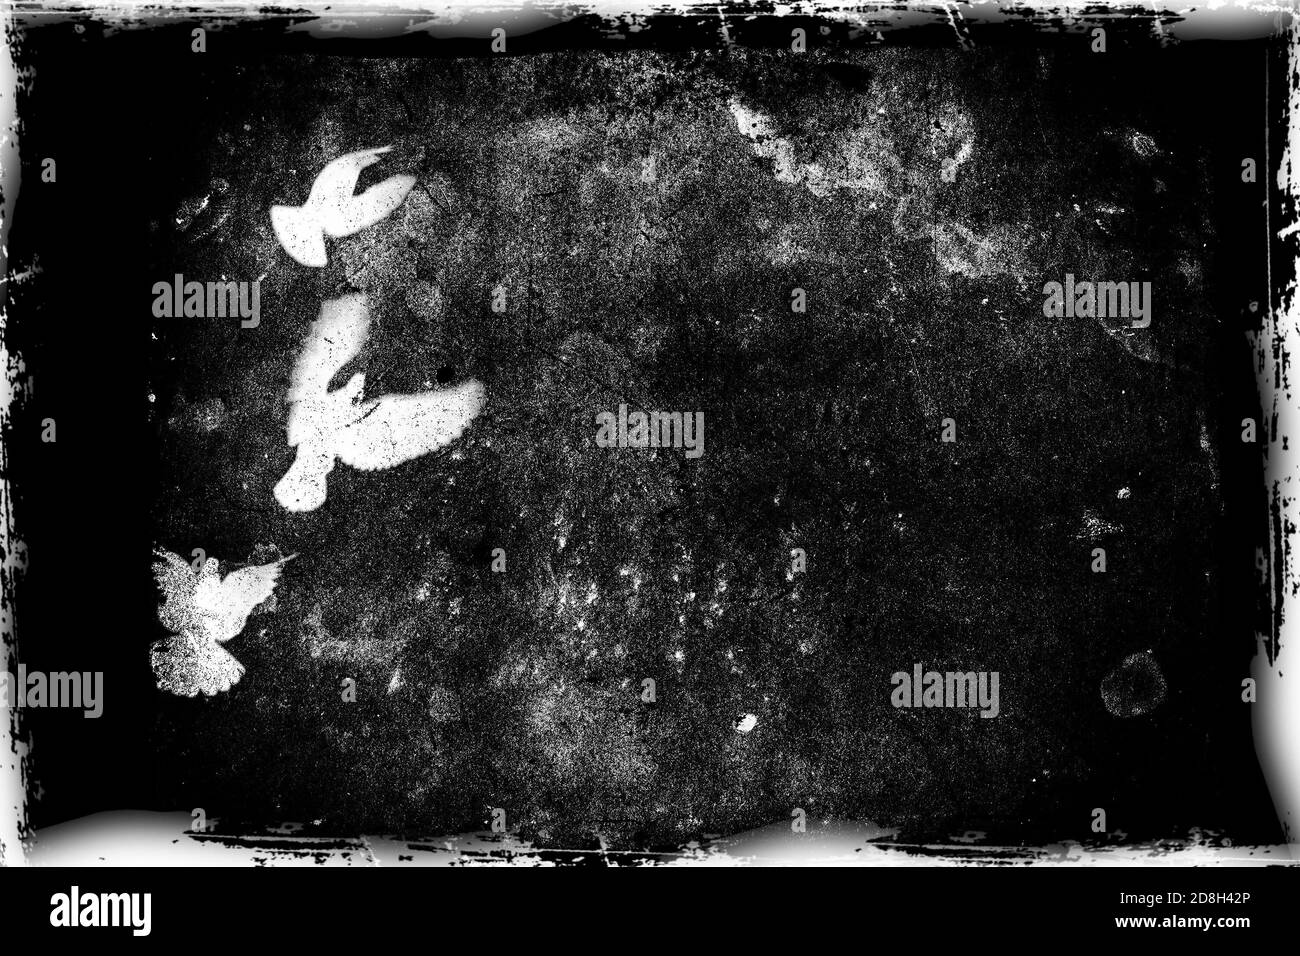 Monochrome Landschaft mit fliegenden Vögeln auf schwarzem Grunge-Hintergrund. Textur von altem Papier. Gothic-Style. Schwarz-Weiß-Abbildung Stockfoto